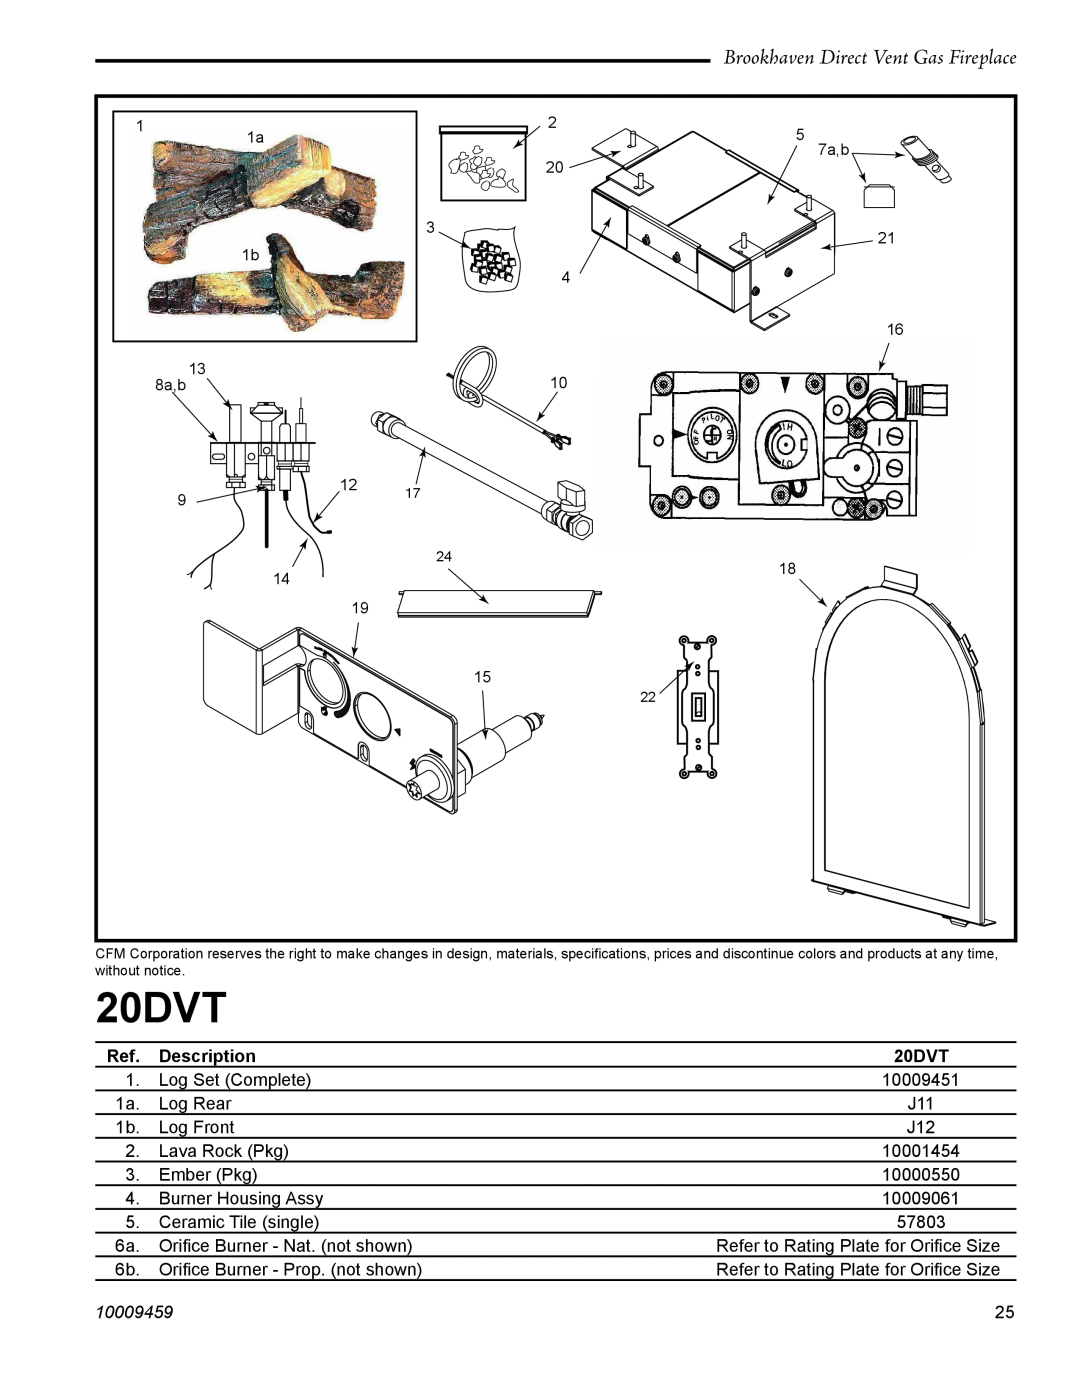 Vermont Casting 20DVT installation instructions Brookhaven Direct Vent Gas Fireplace, Description, 10009459 